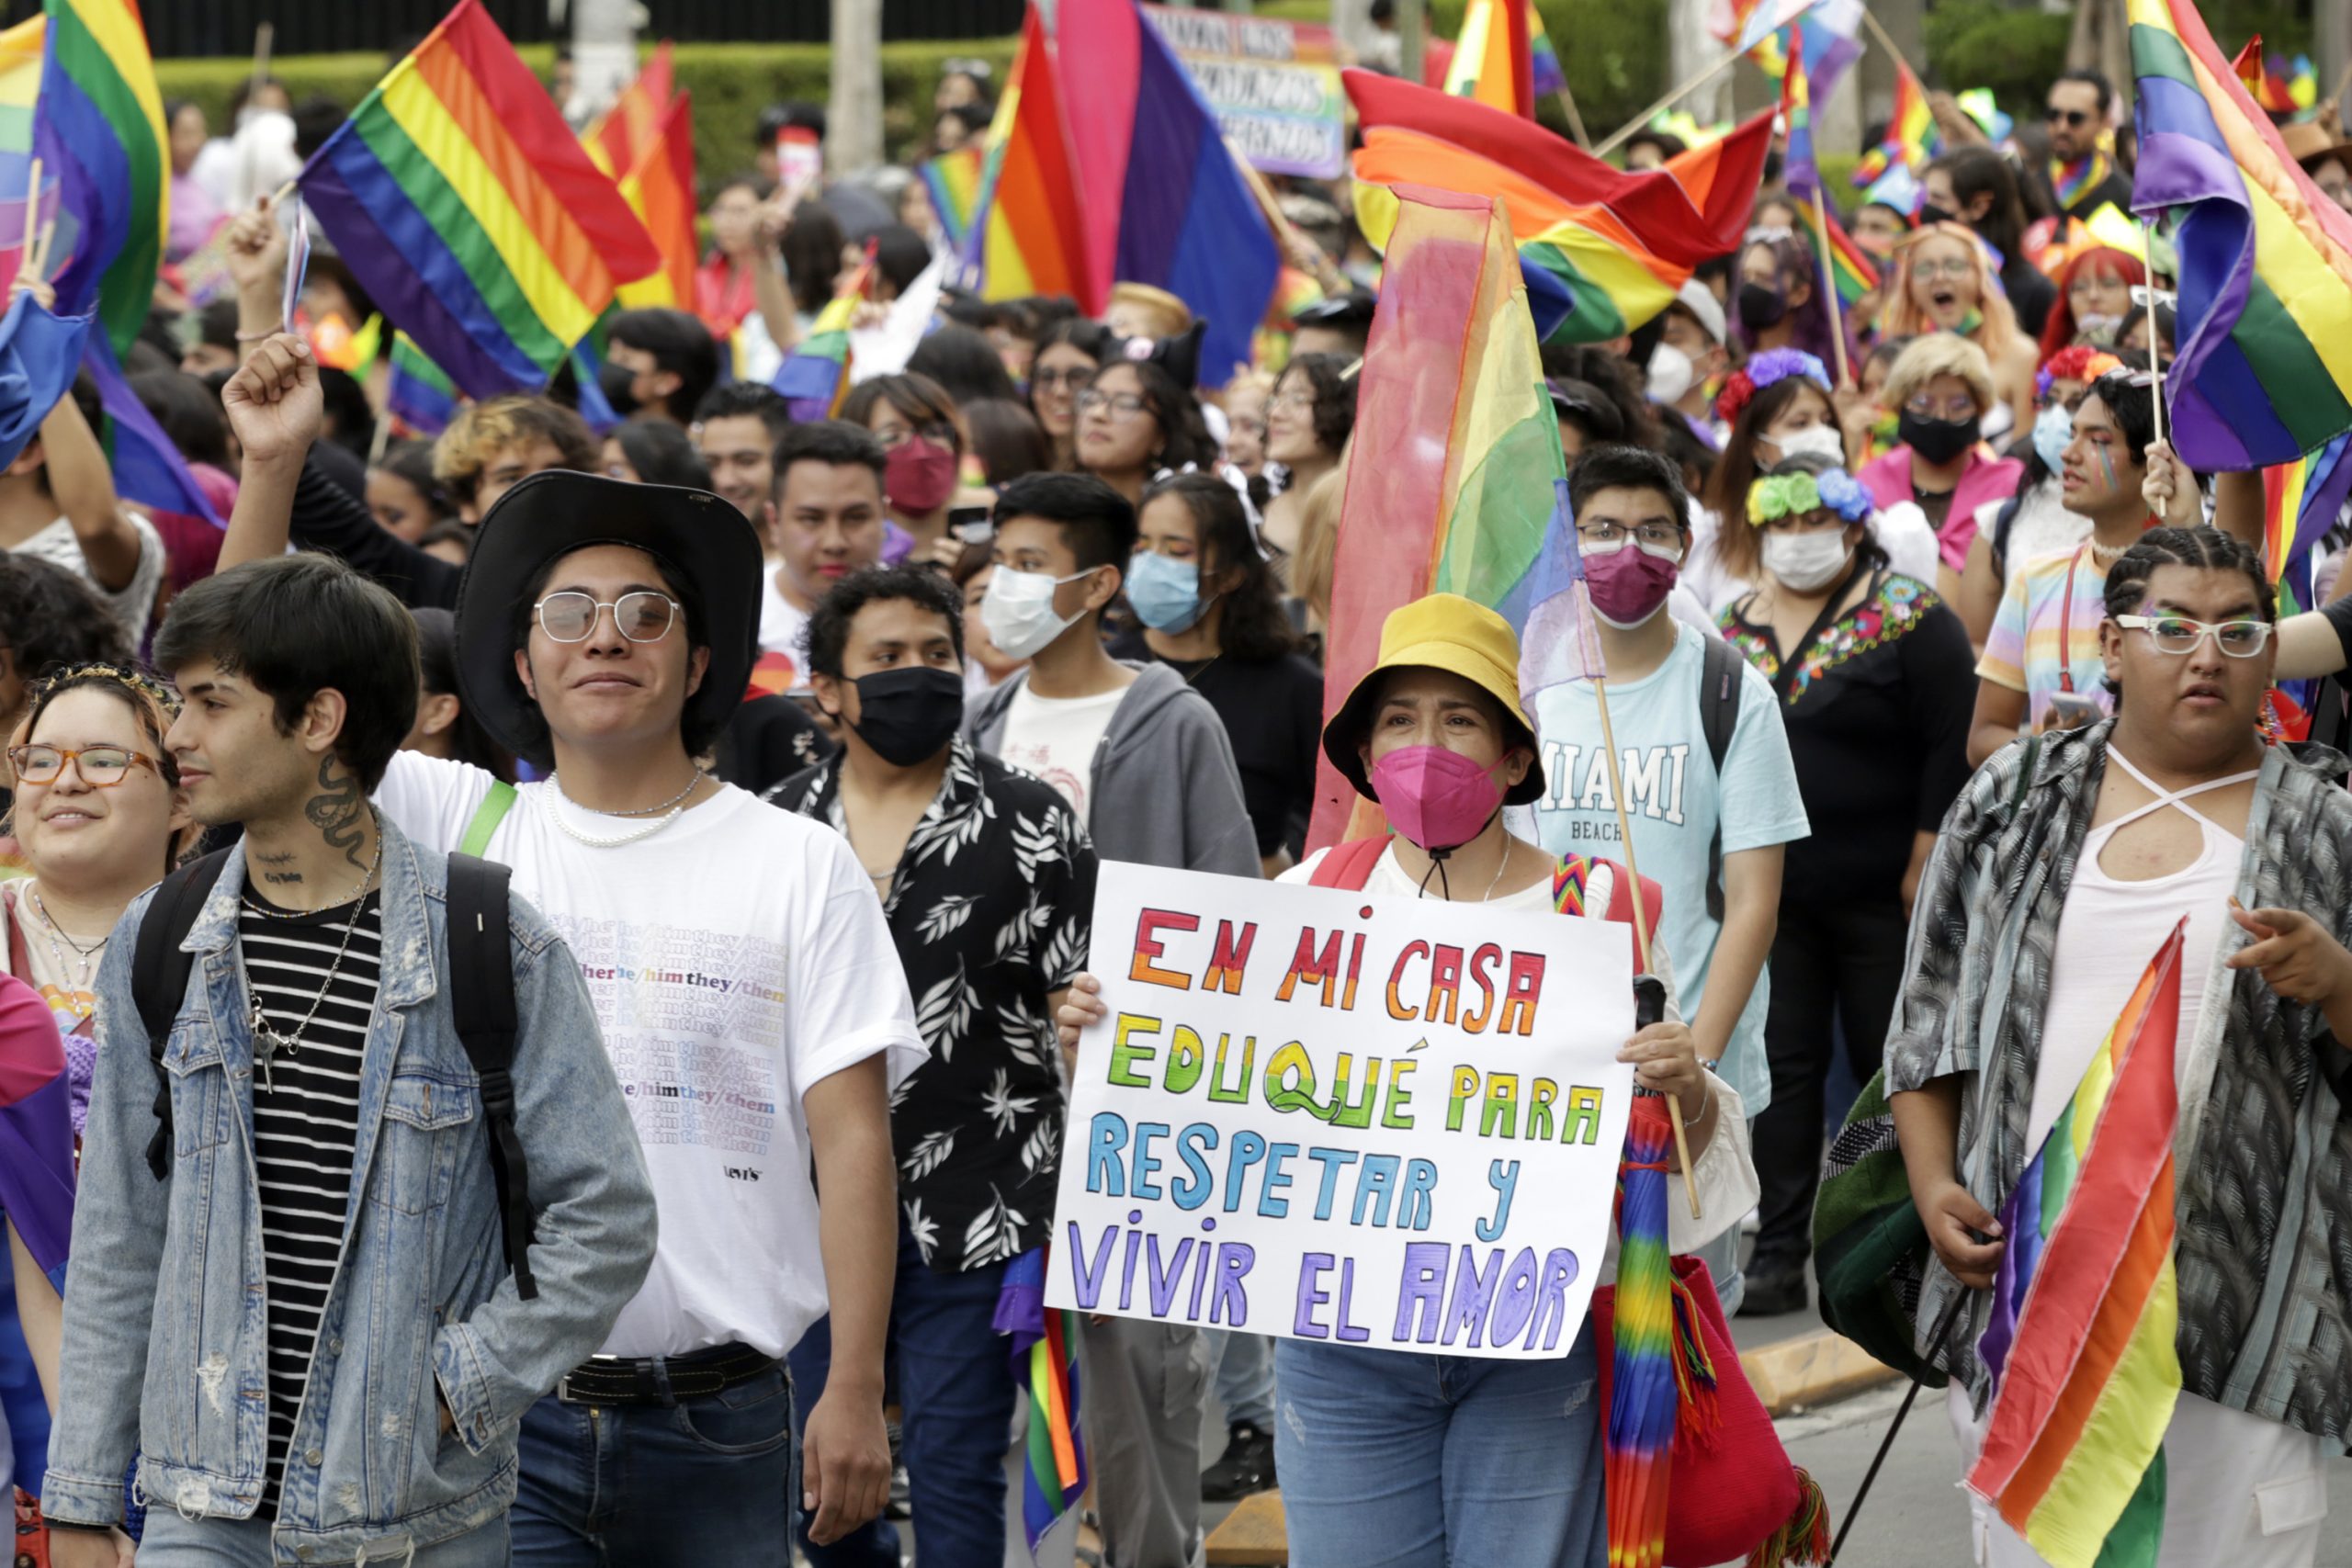 Visibilidad y respeto, comunidad LGBT+ pinta de arcoíris a Puebla